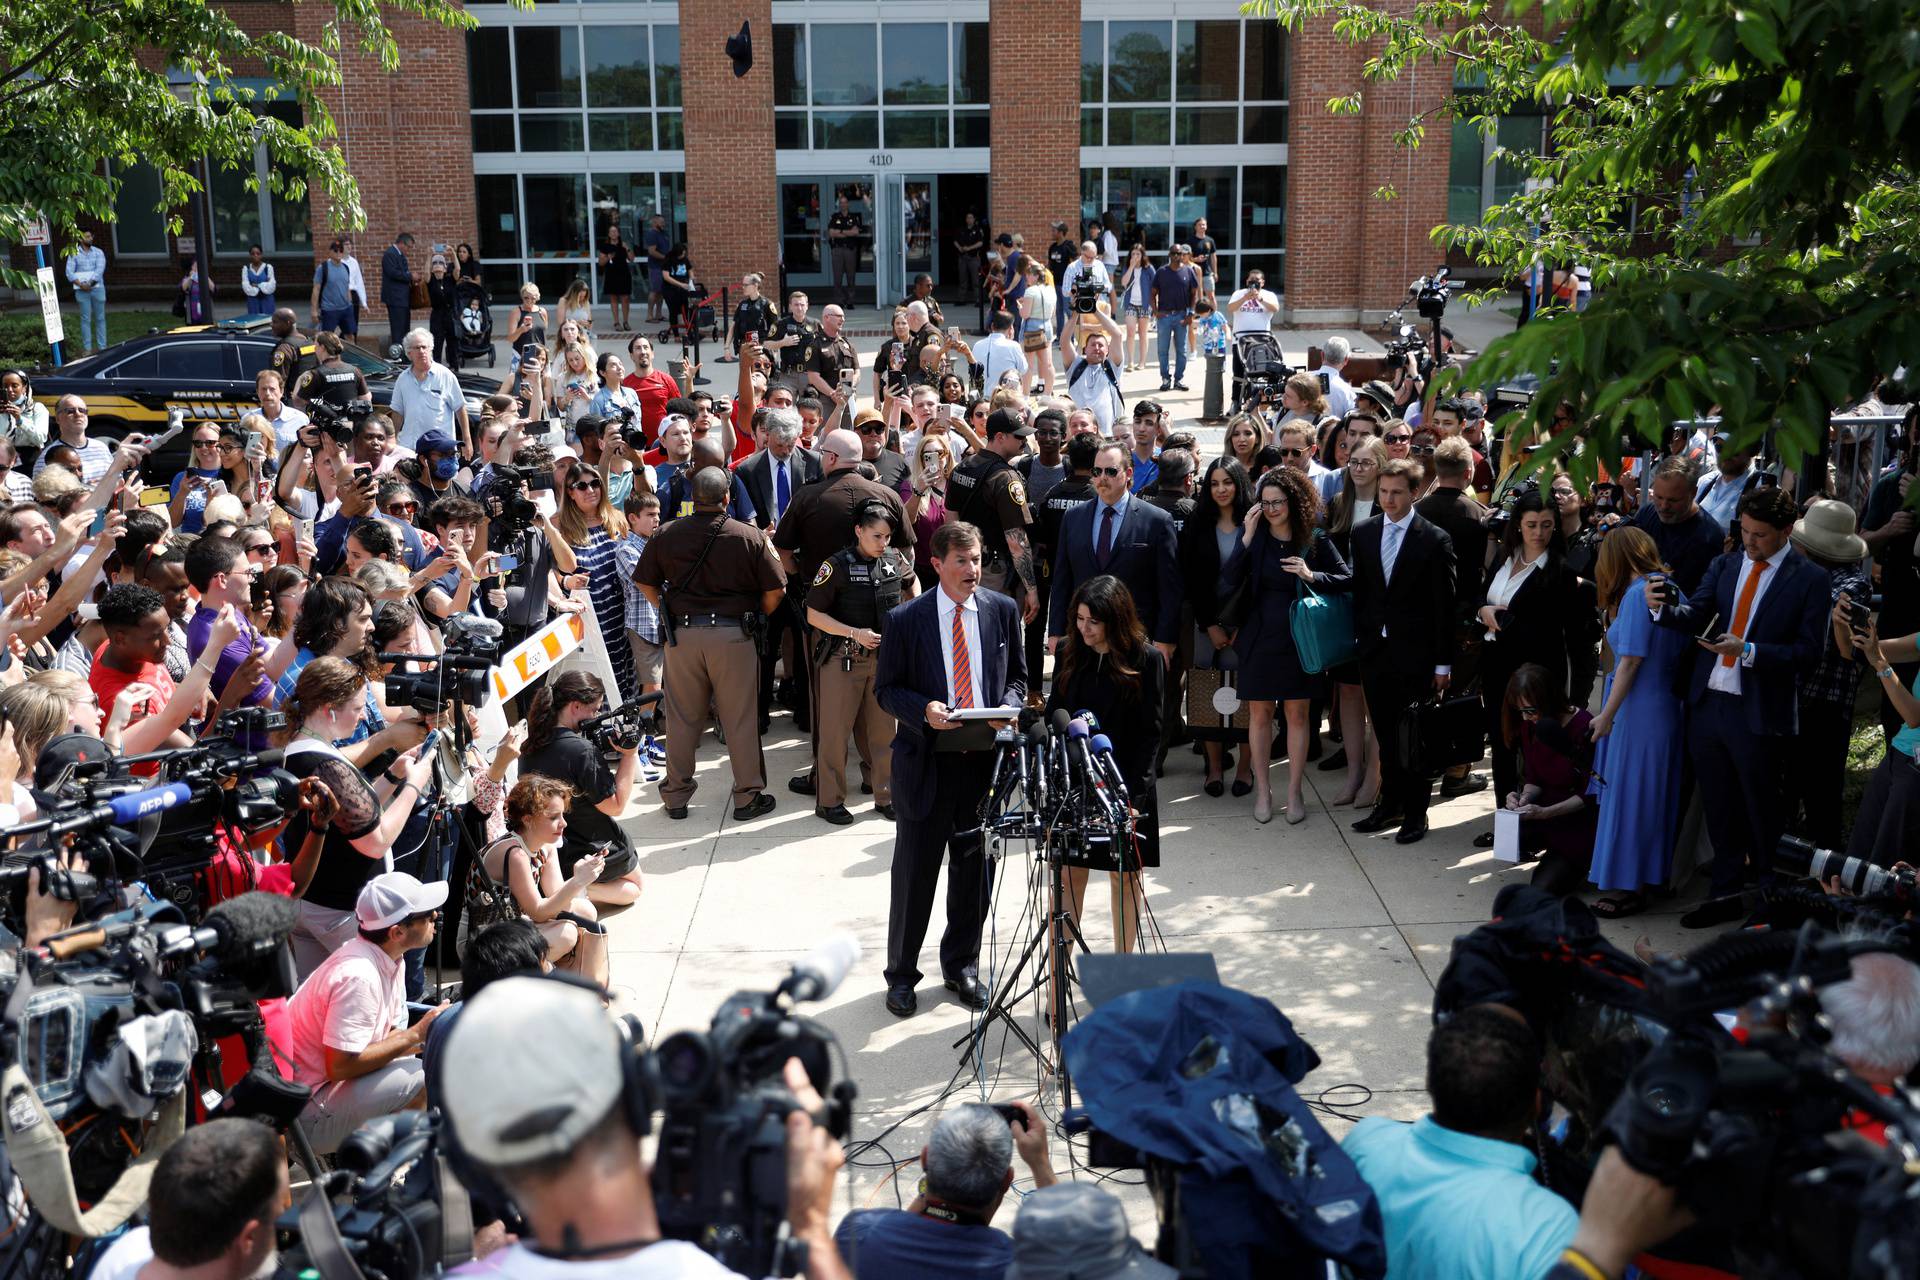 Depp v. Heard defamation trial in Fairfax